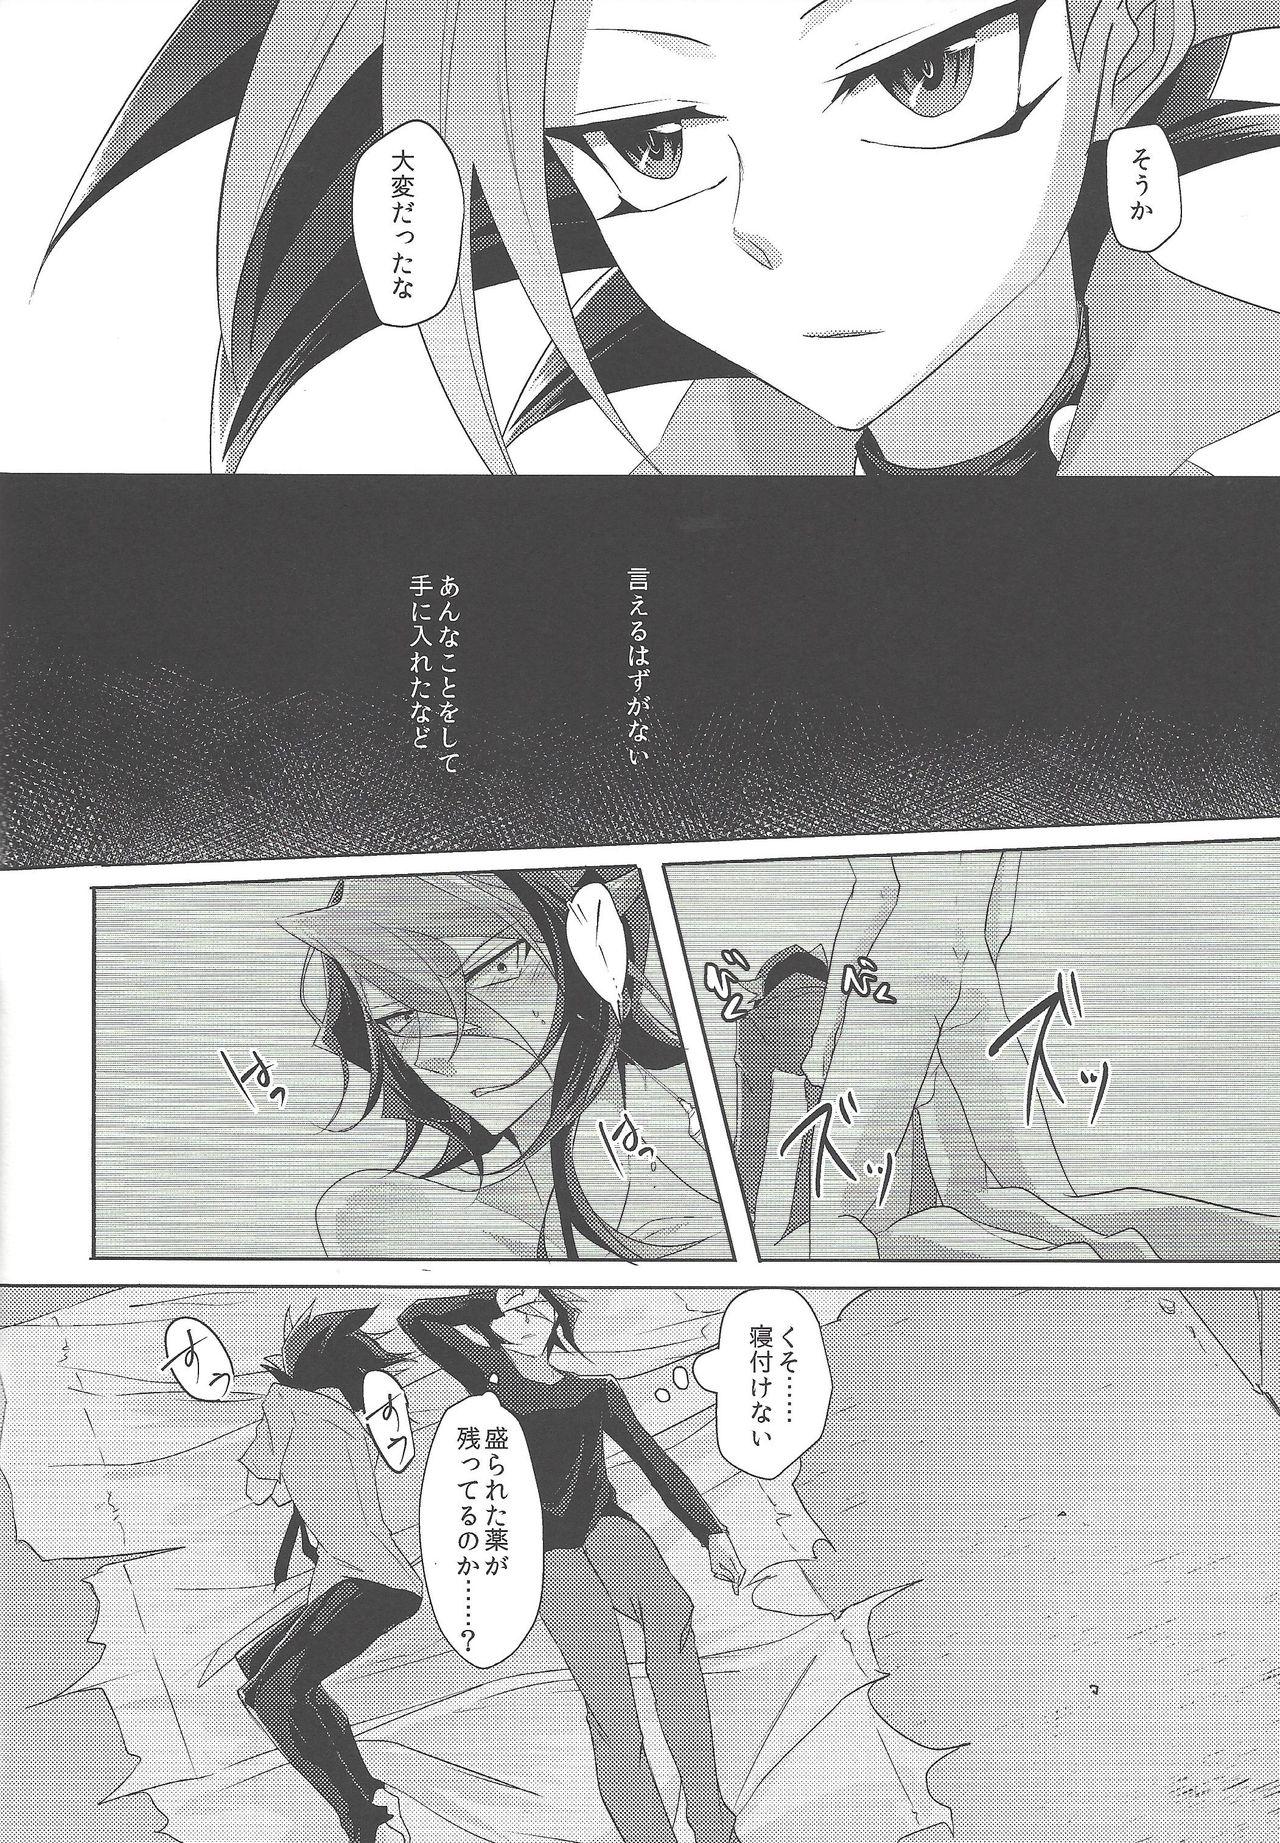 Uncensored Kimi to kokoro no risōkyō - Yu-gi-oh arc-v POV - Page 7